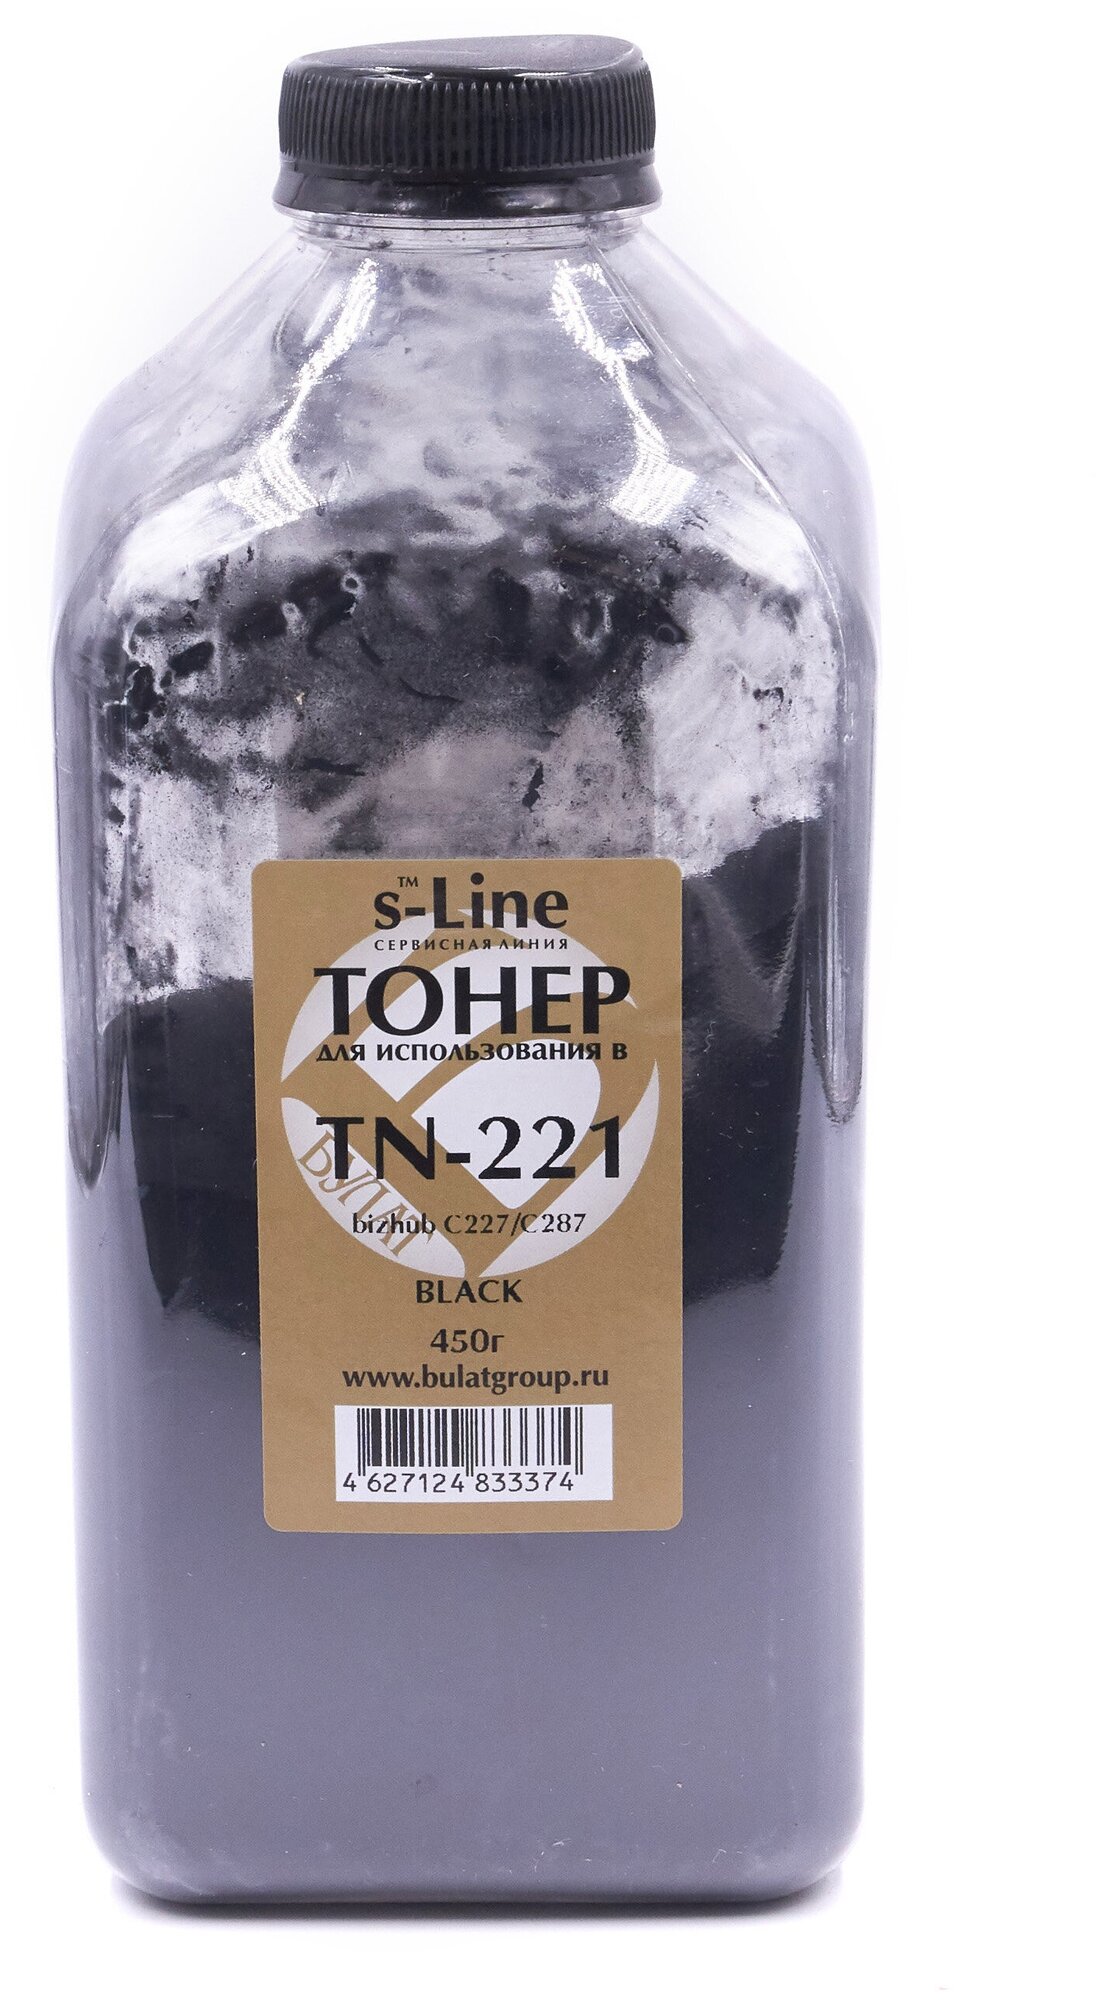 Тонер с девелопером булат s-Line TN221 для Konica Minolta bizhub C227 (Чёрный, банка 450 г)